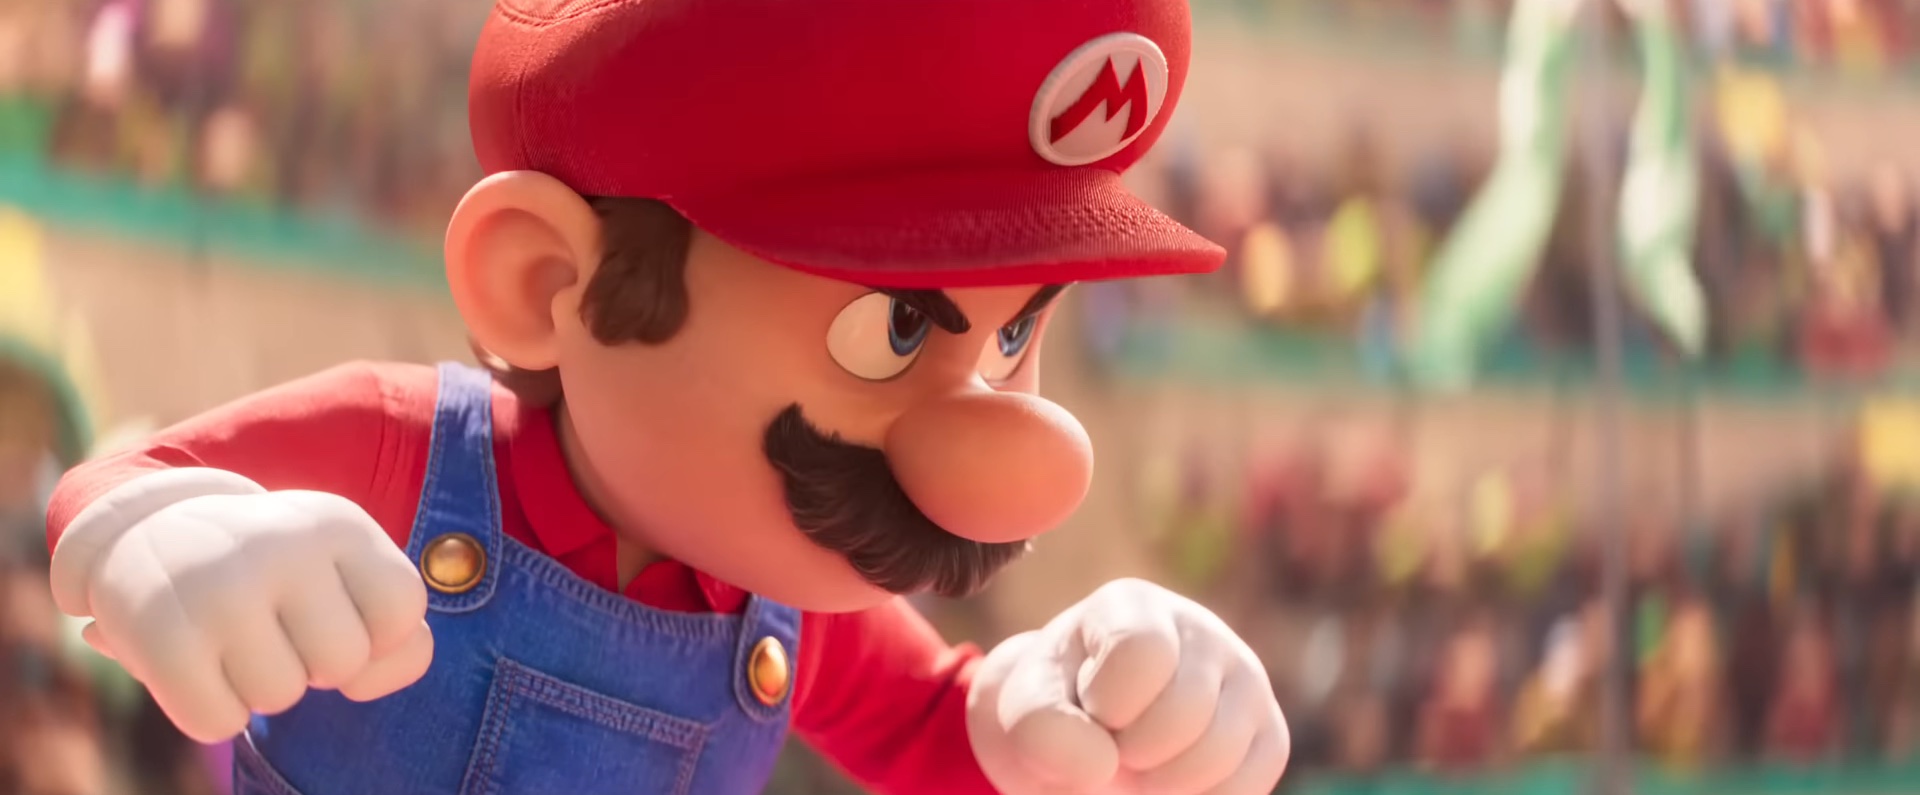 Mario en posición de pelea en "La película de Super Mario Bros."